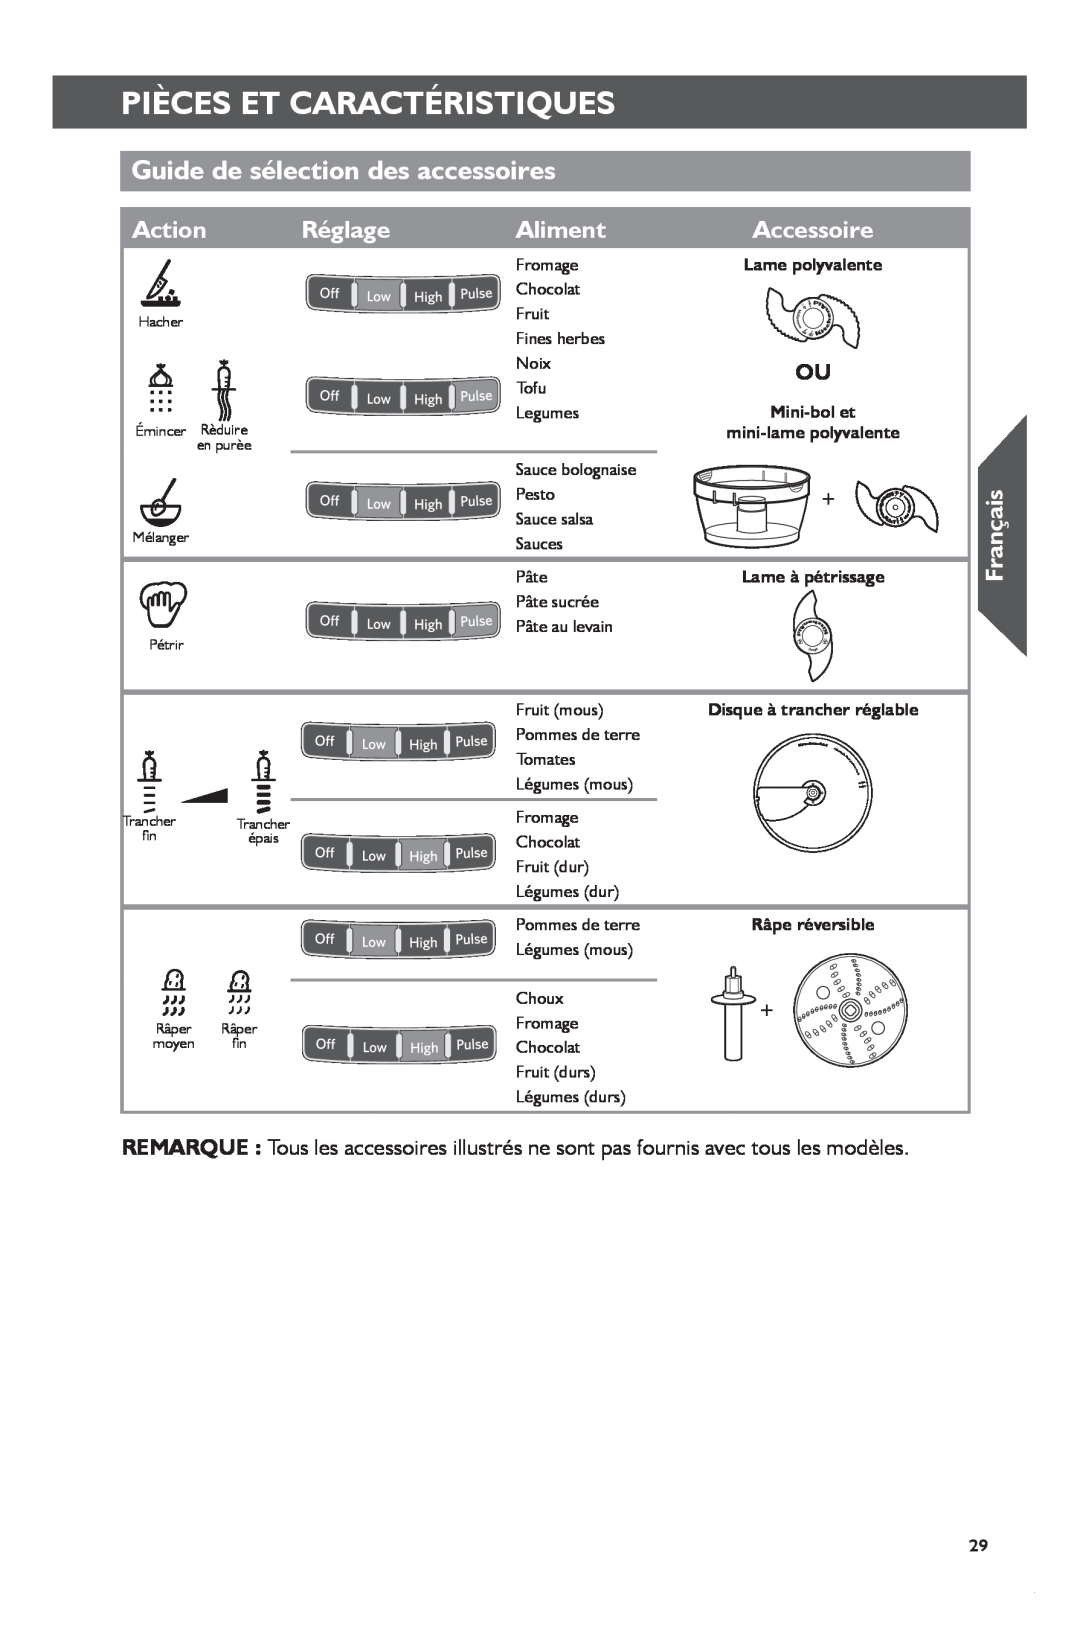 KitchenAid KFP1133 Guide de sélection des accessoires, Réglage, Aliment, Pièces Et Caractéristiques, Action, Français 